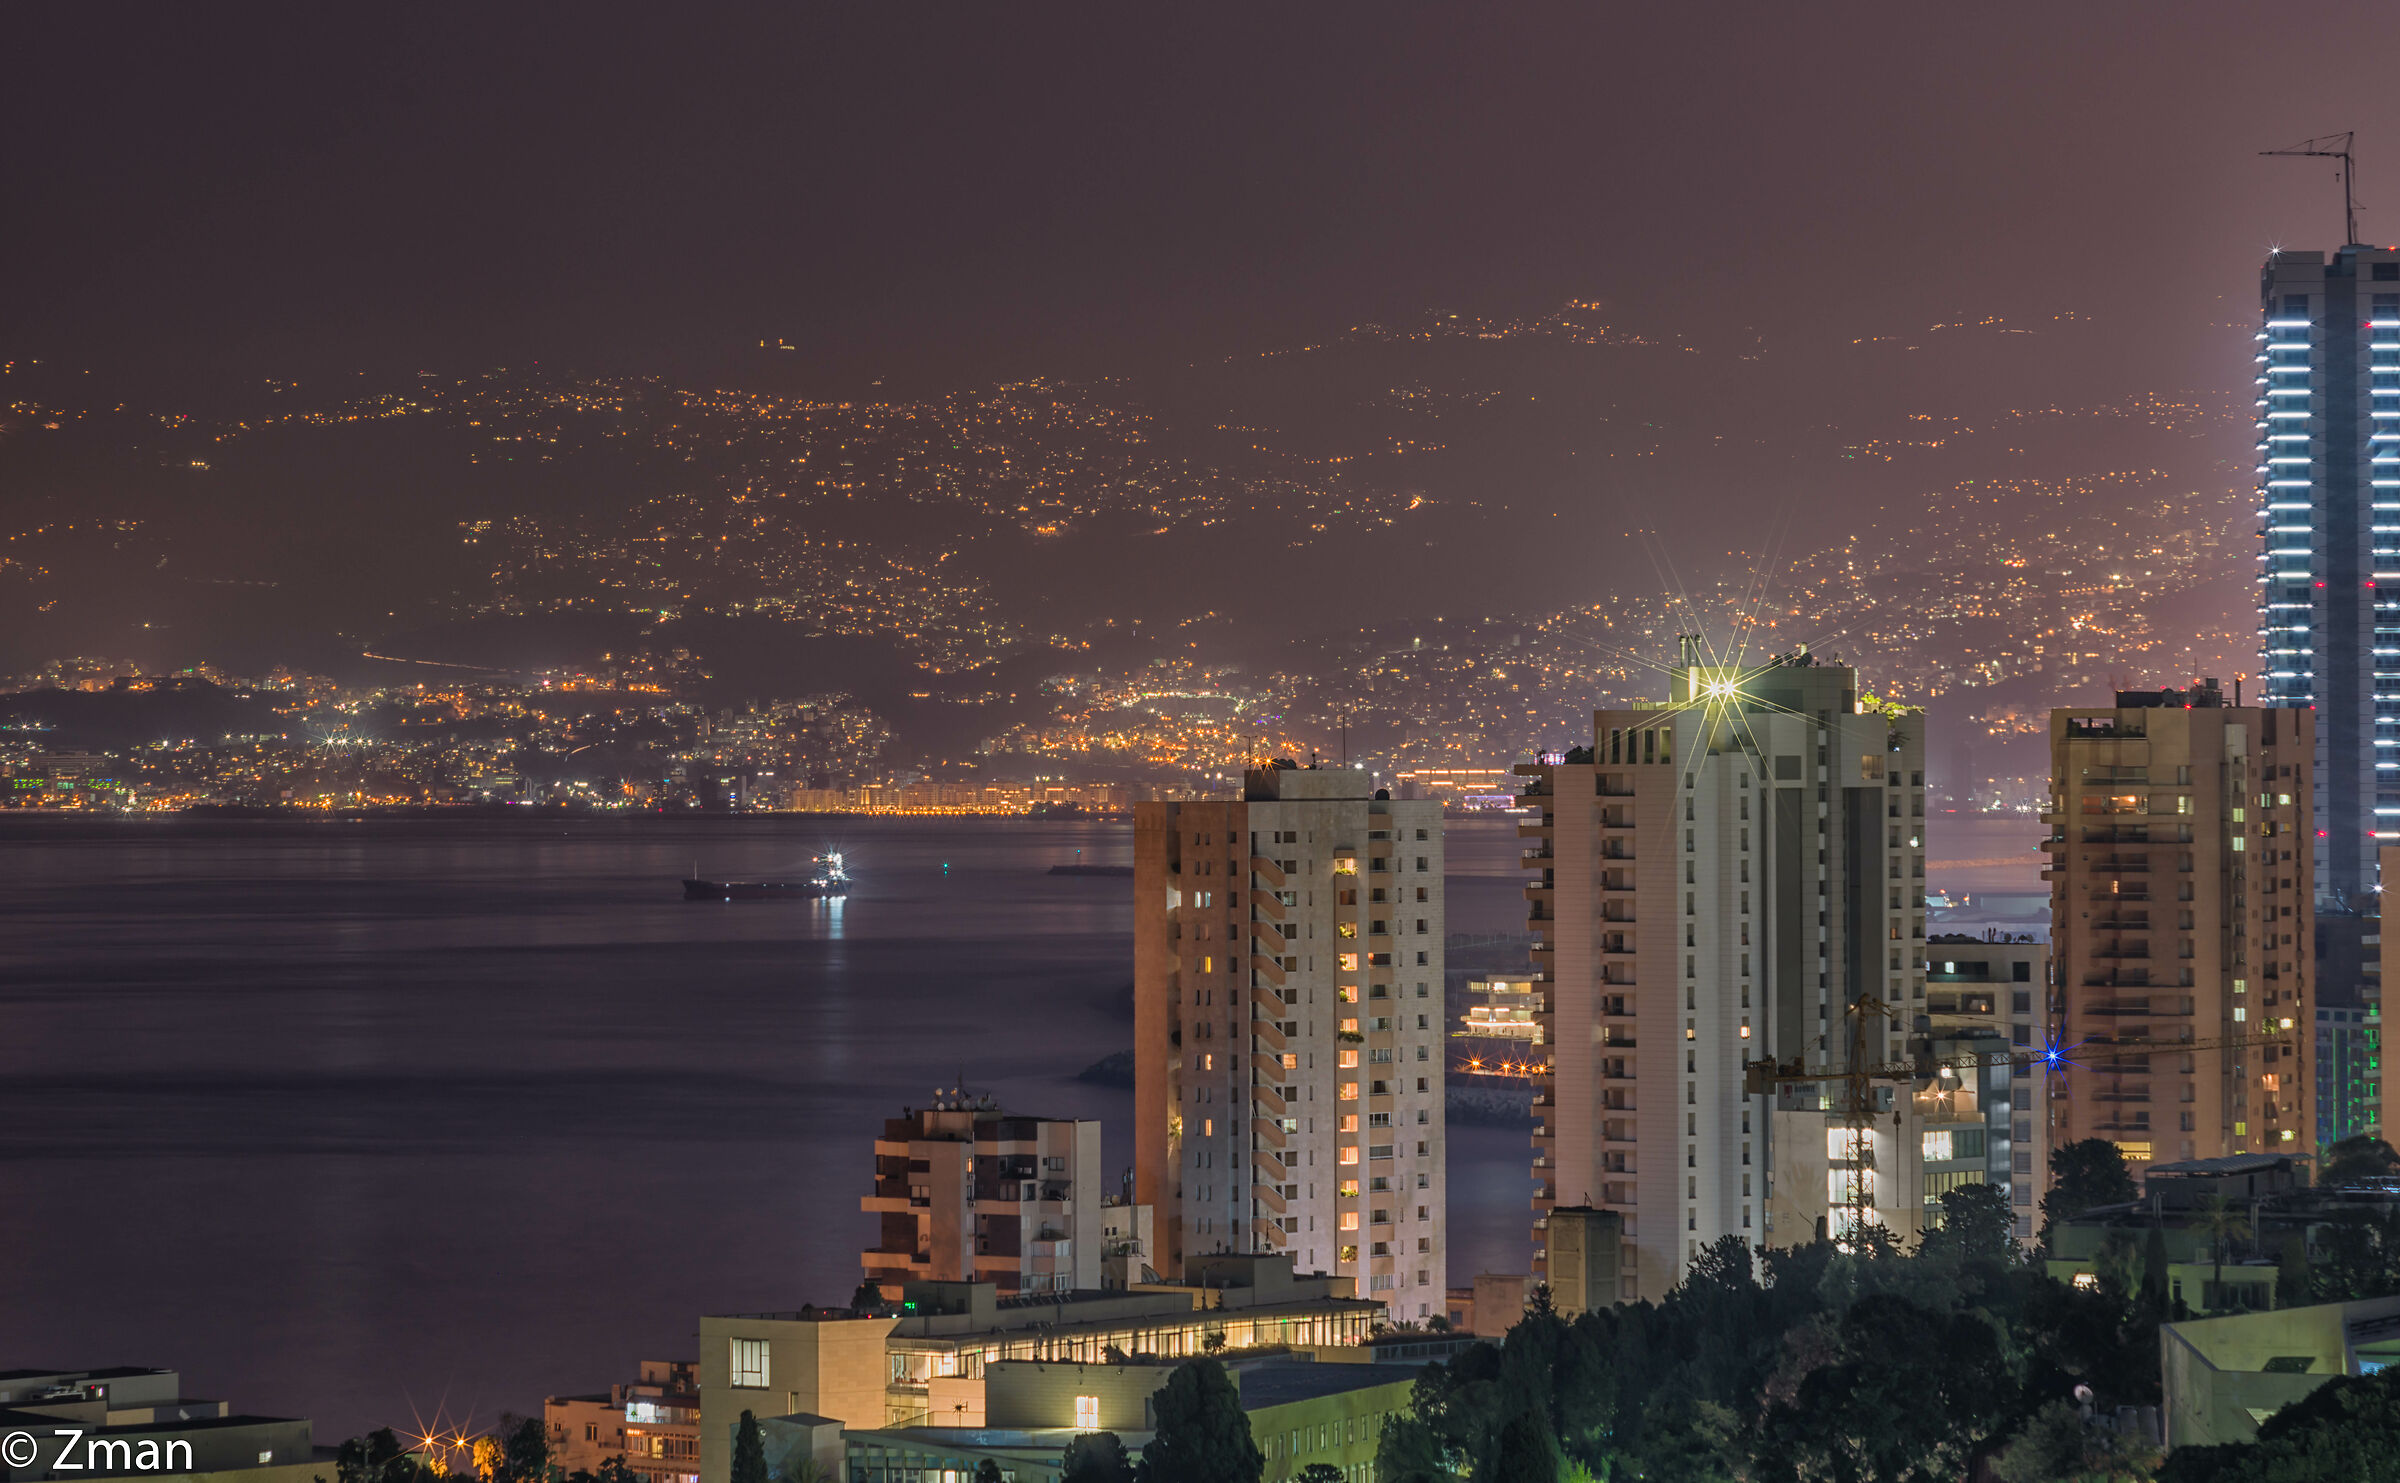 Beirut Lights...